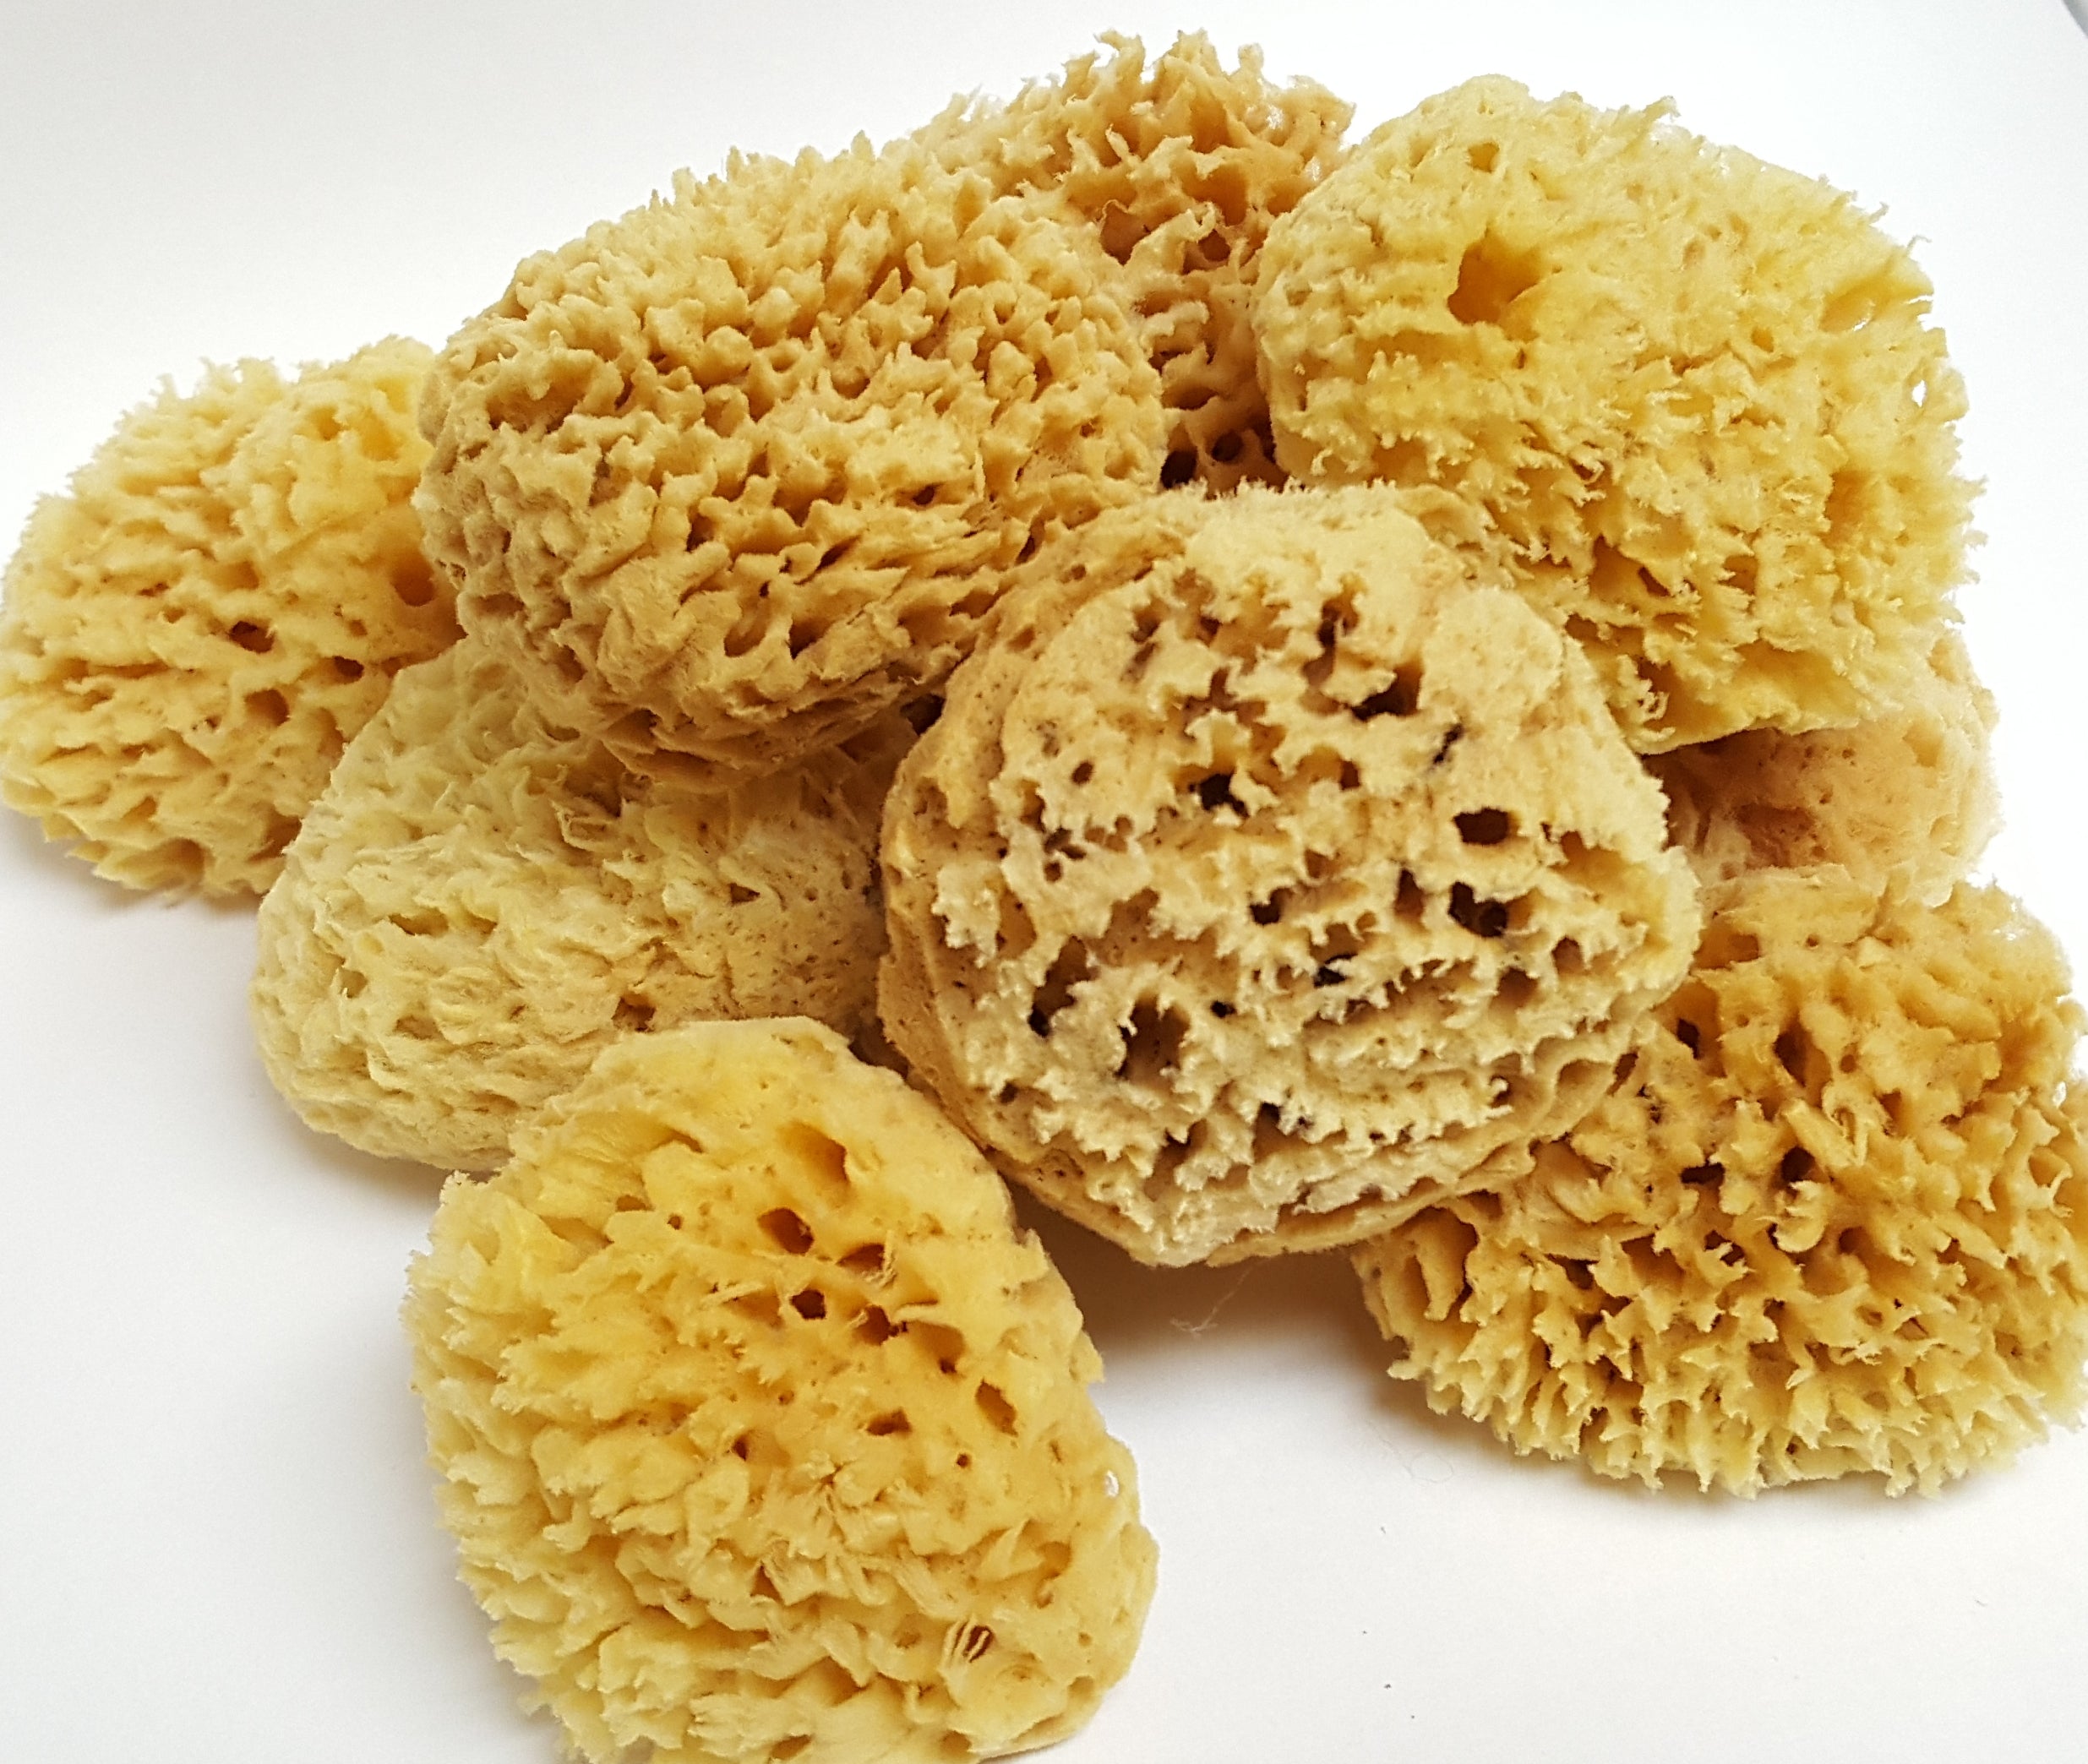 Wool Sea Sponge – Mammy's Soap Co